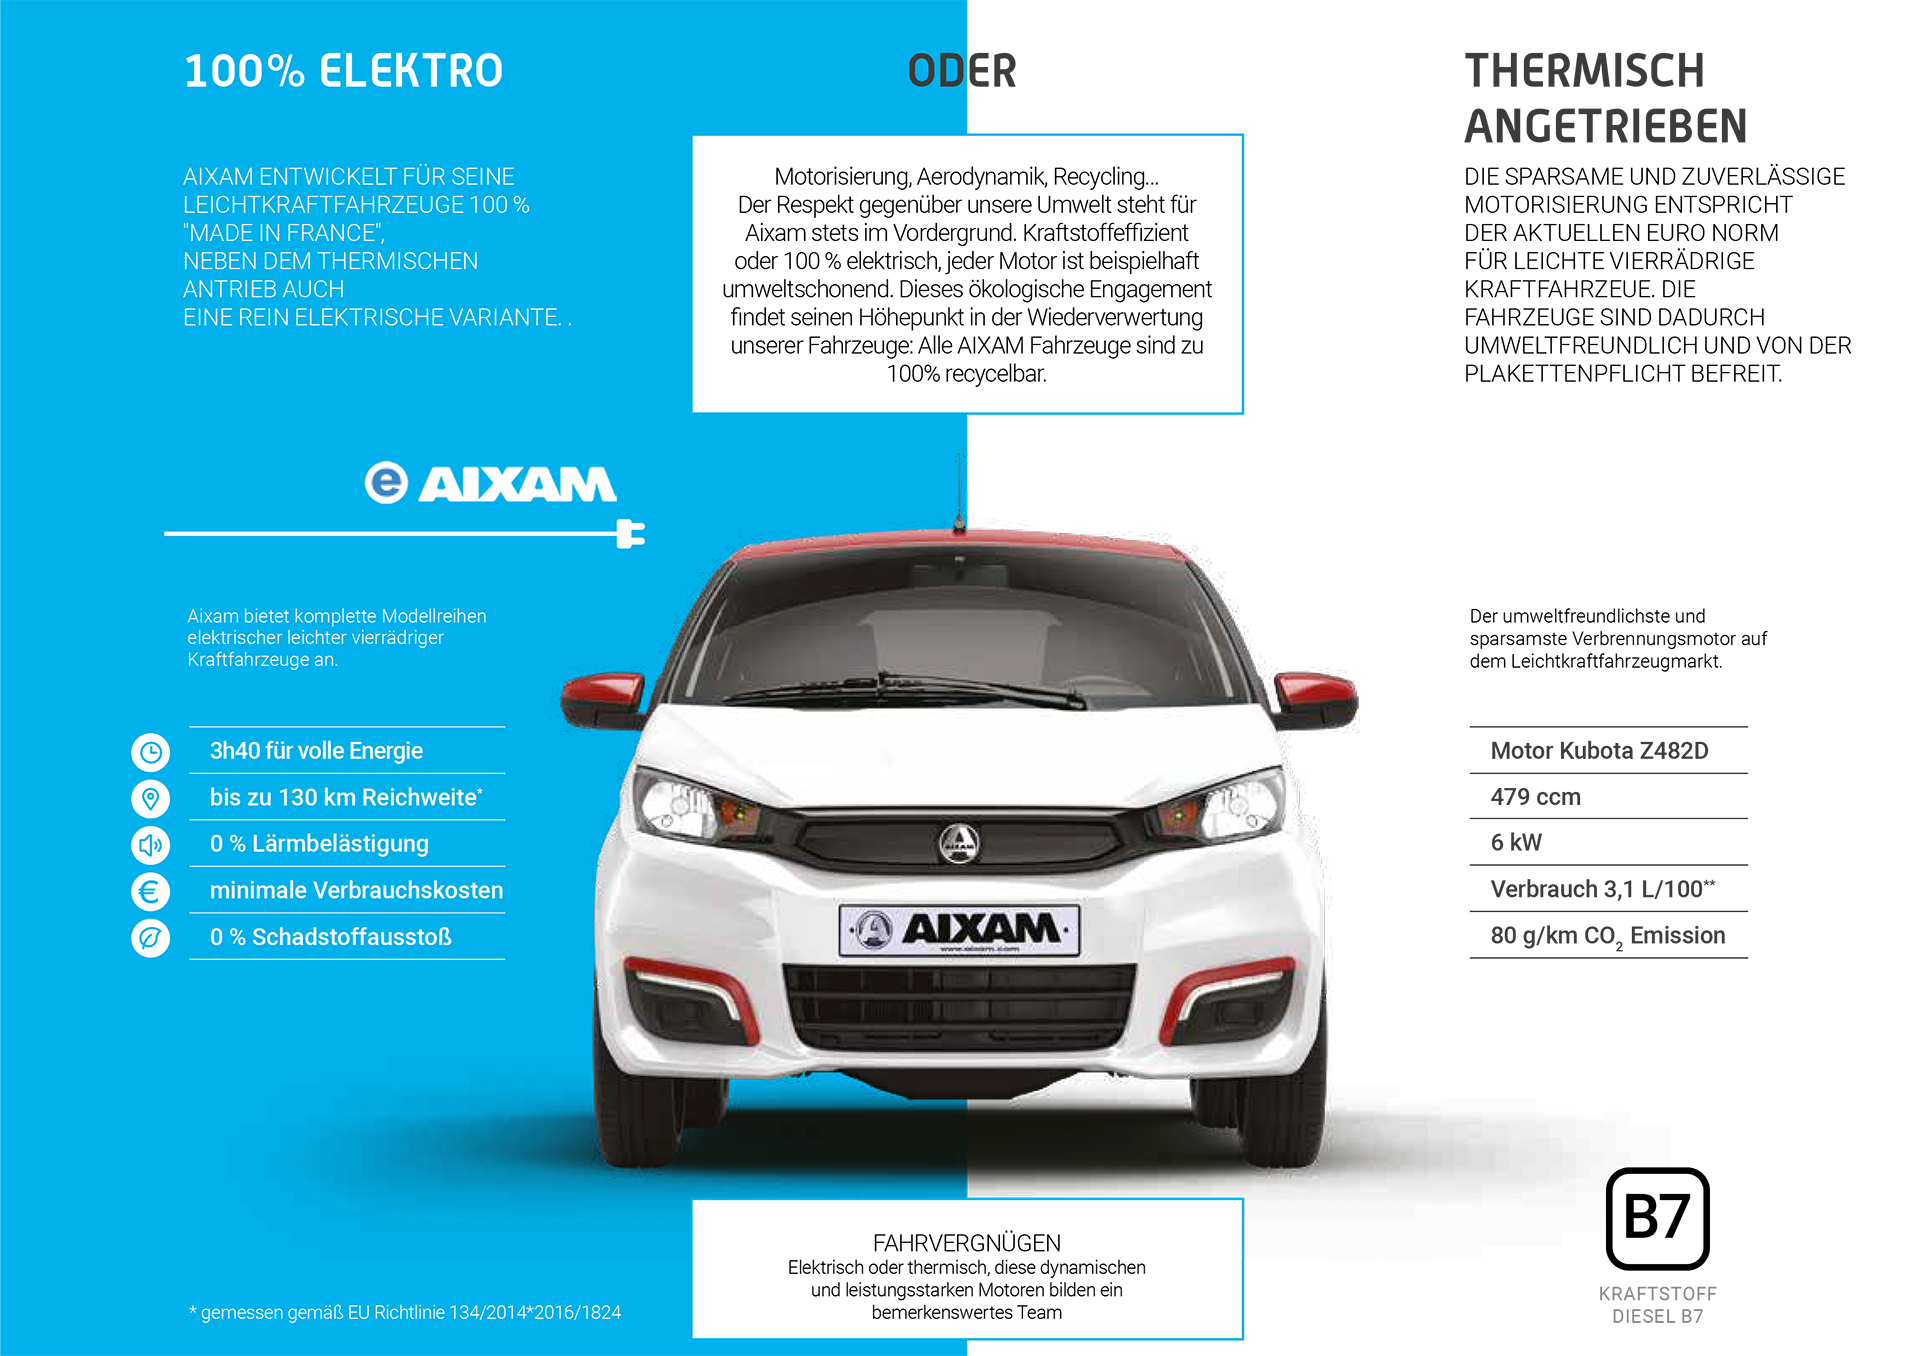 AIXAM Automobile Elektro und Thermisch angetrieben